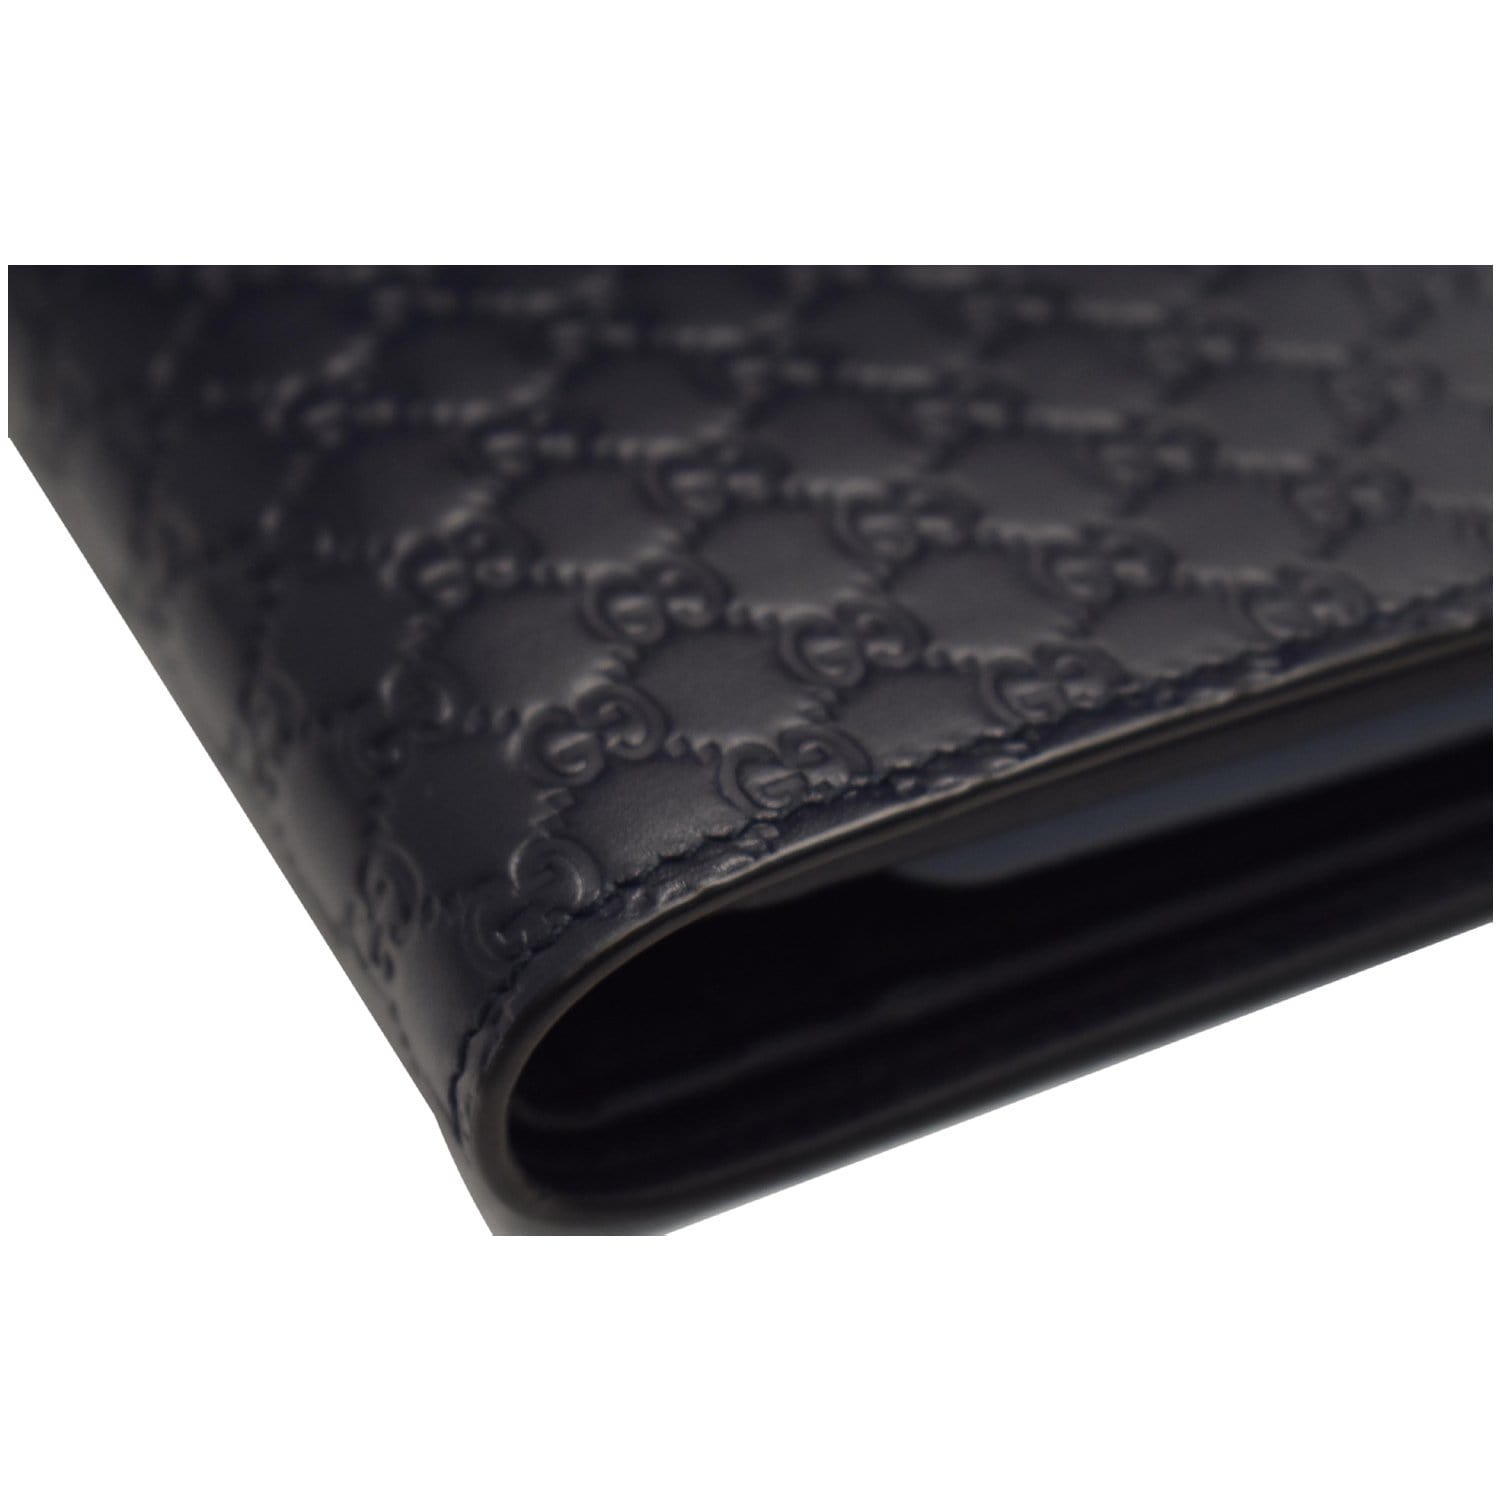 Gucci 544478 493075 Men's Black Micro Guccissima Leather Money Clip Wallet  (GGMW2021) – Dellamoda